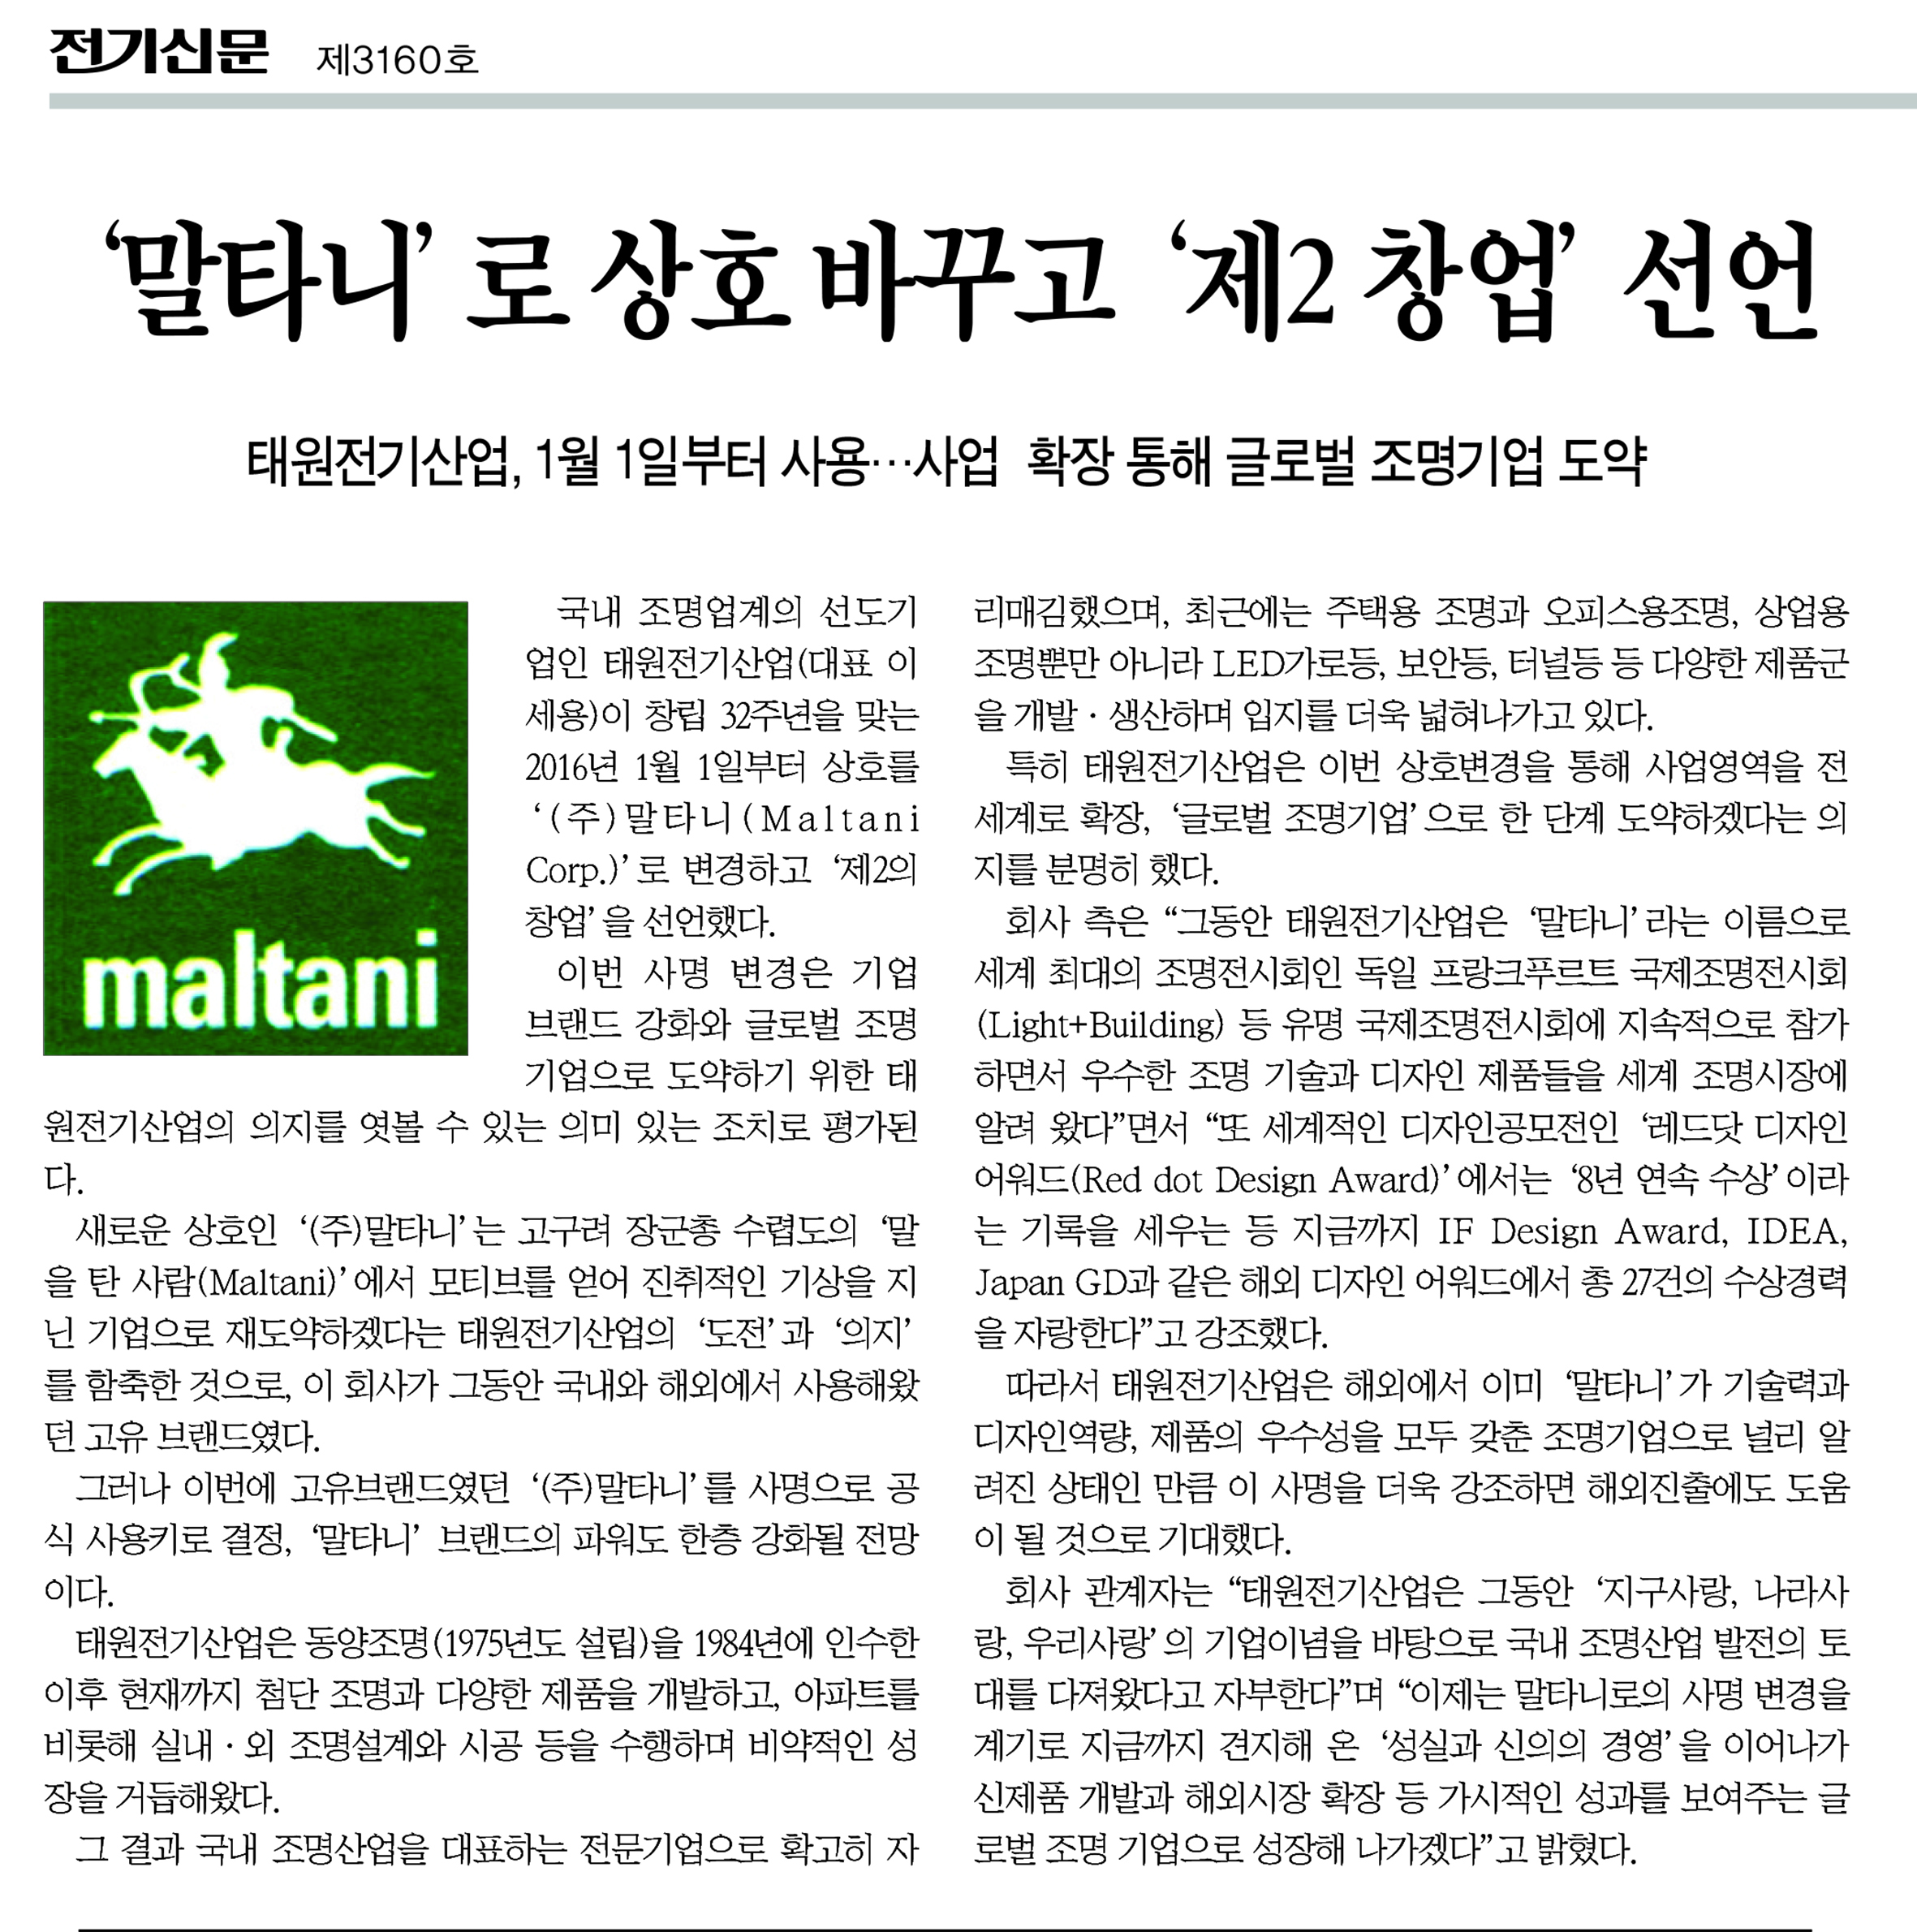 전기신문-15년 12월 24일 사명변경.jpg